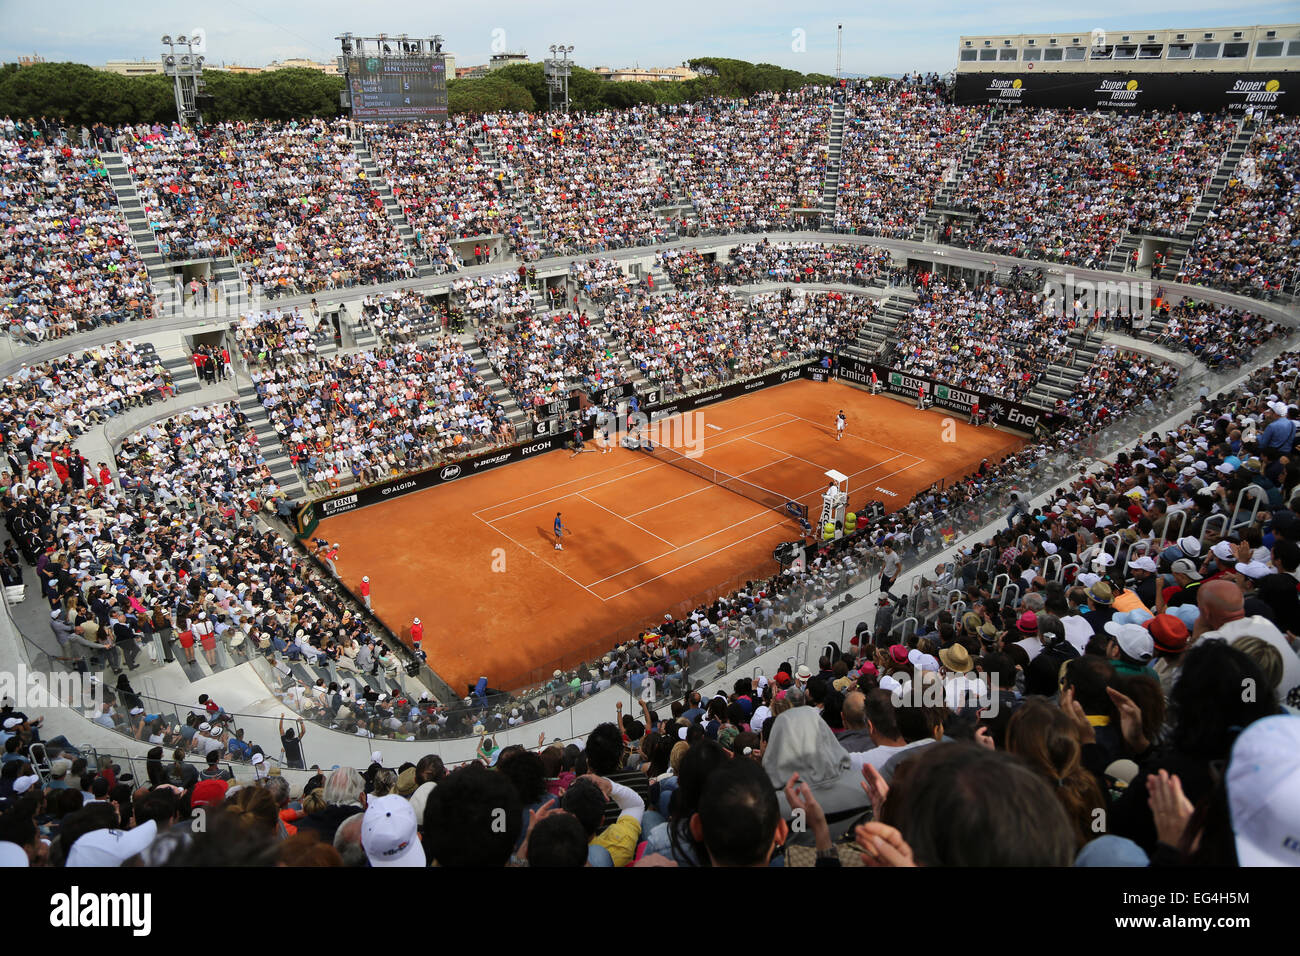 Italia, Roma : una vista generale mostra la corte centrale durante l'ATP Roma il Tennis Masters finale tra la Spagna di Rafael Nadal (L) Foto Stock